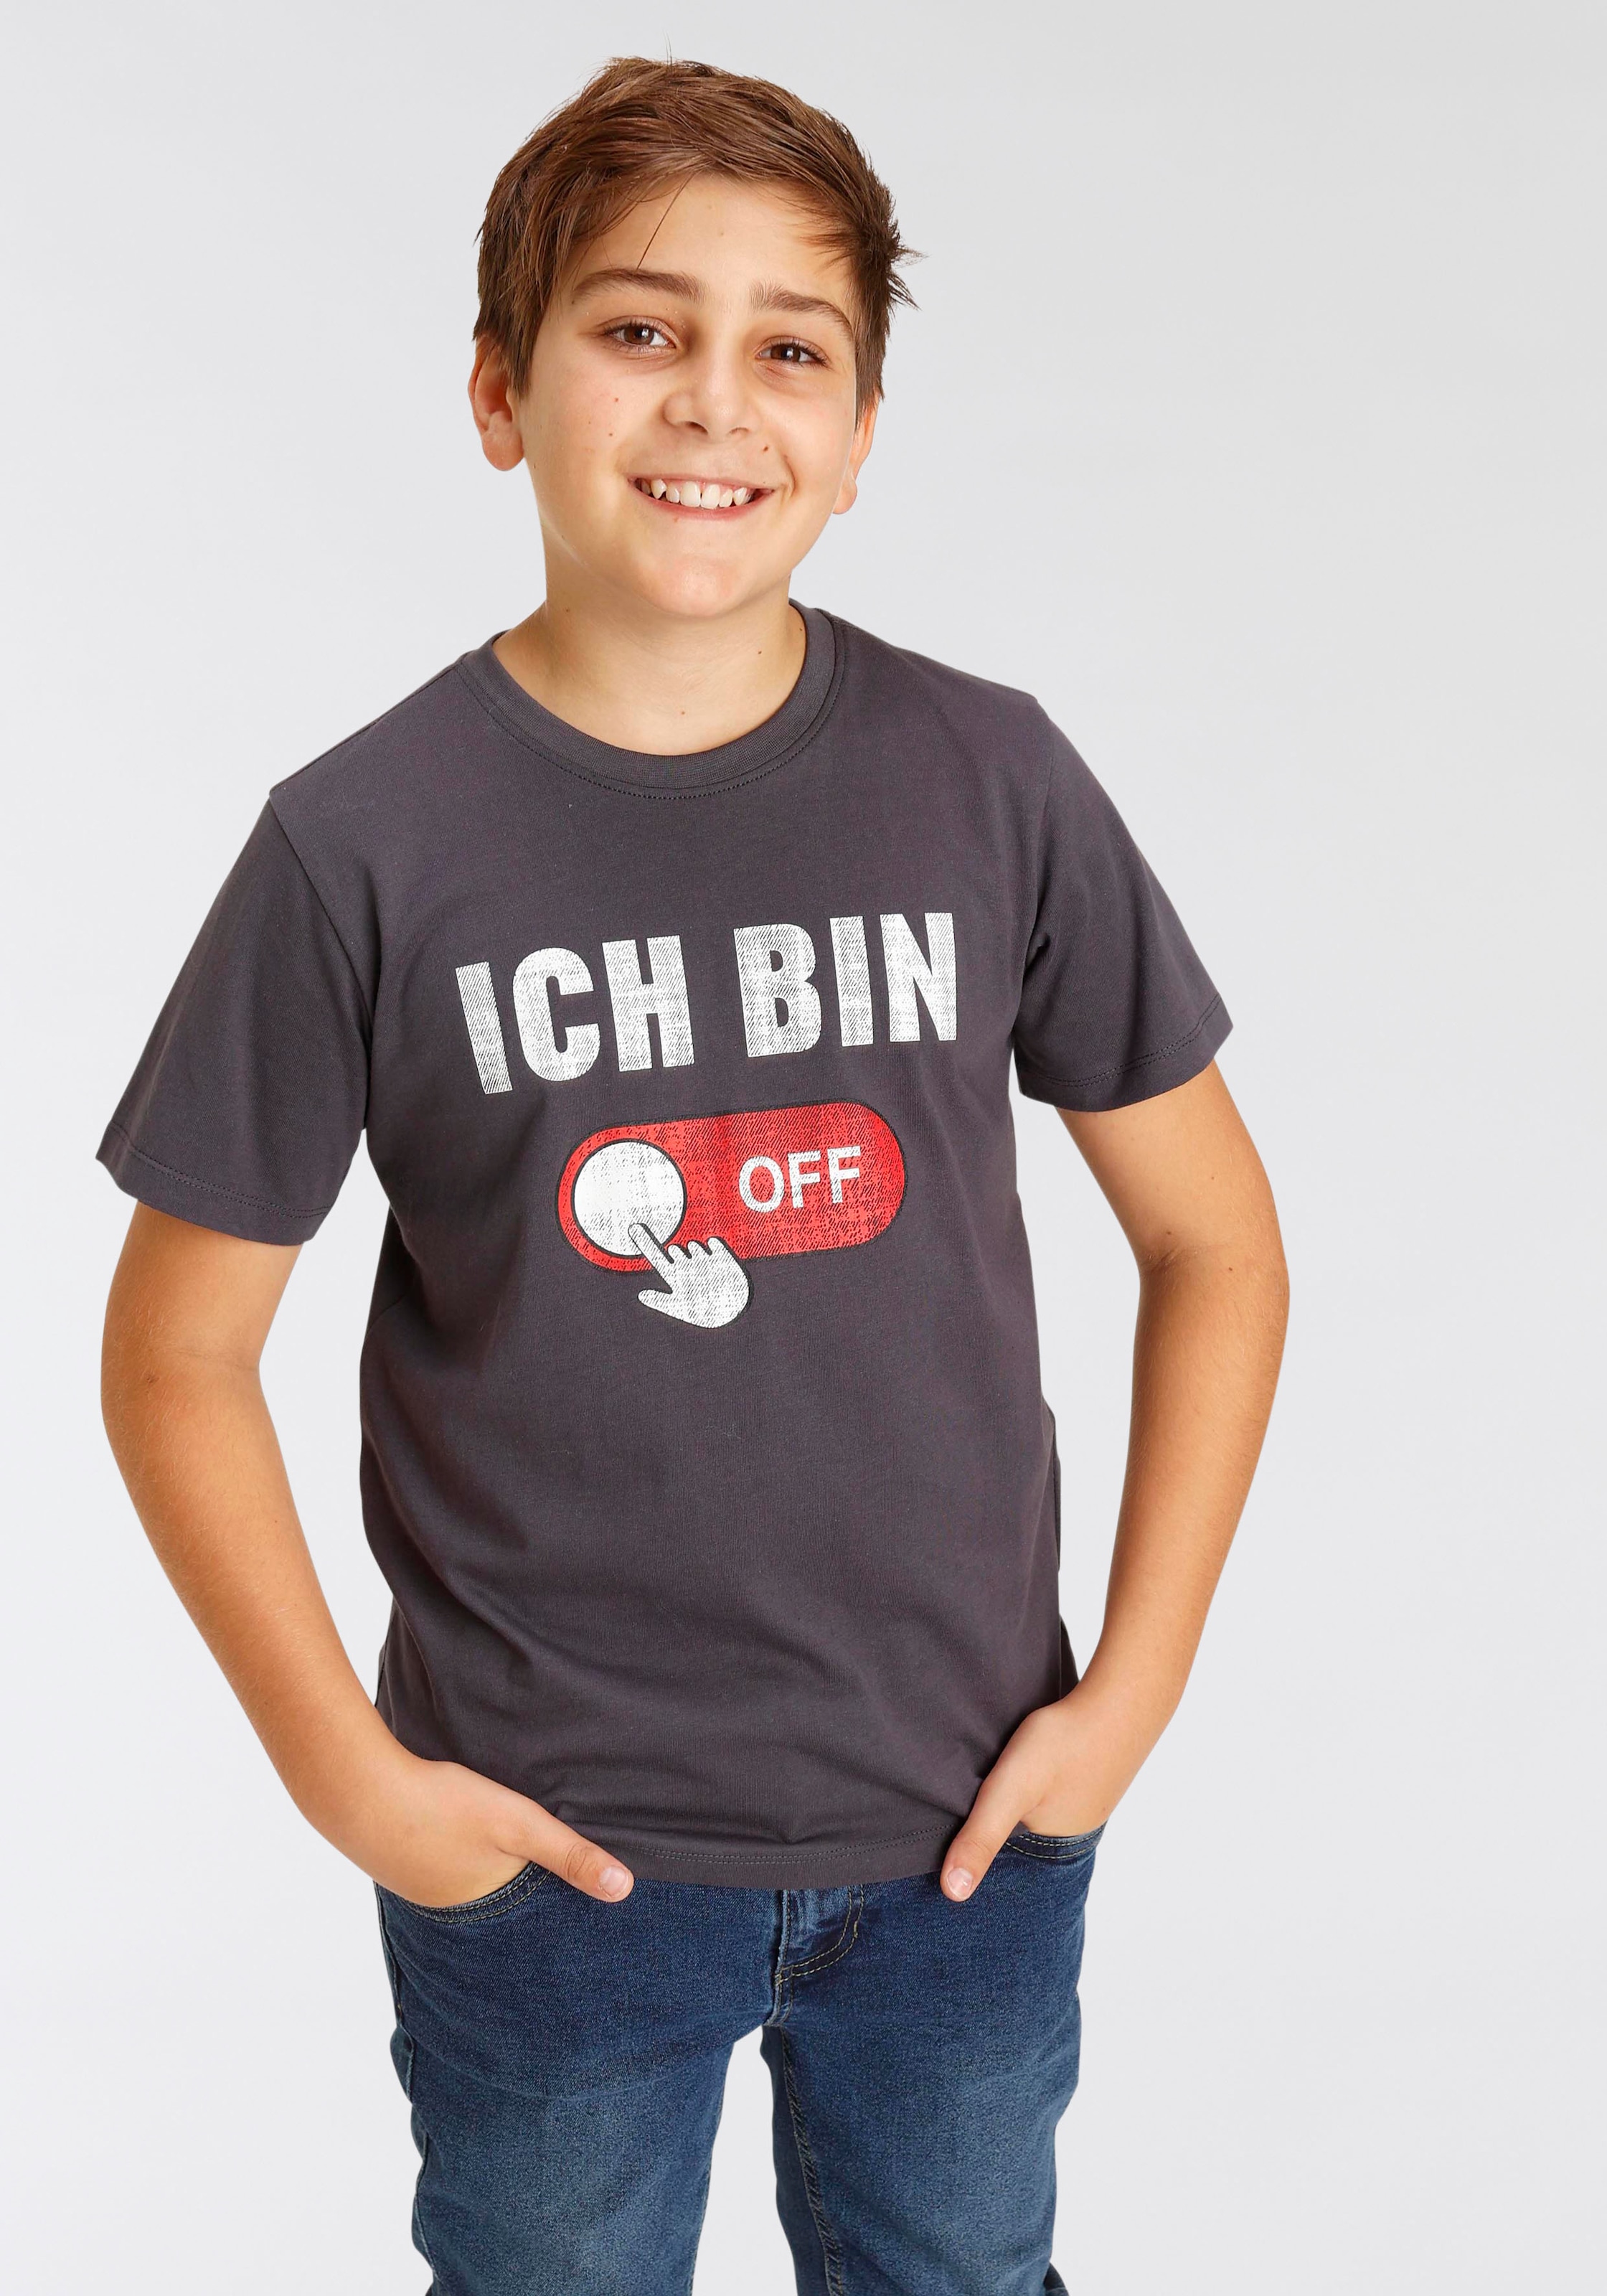 BIN bei T-Shirt KIDSWORLD OTTO »ICH OFF...«, Sprücheshirt